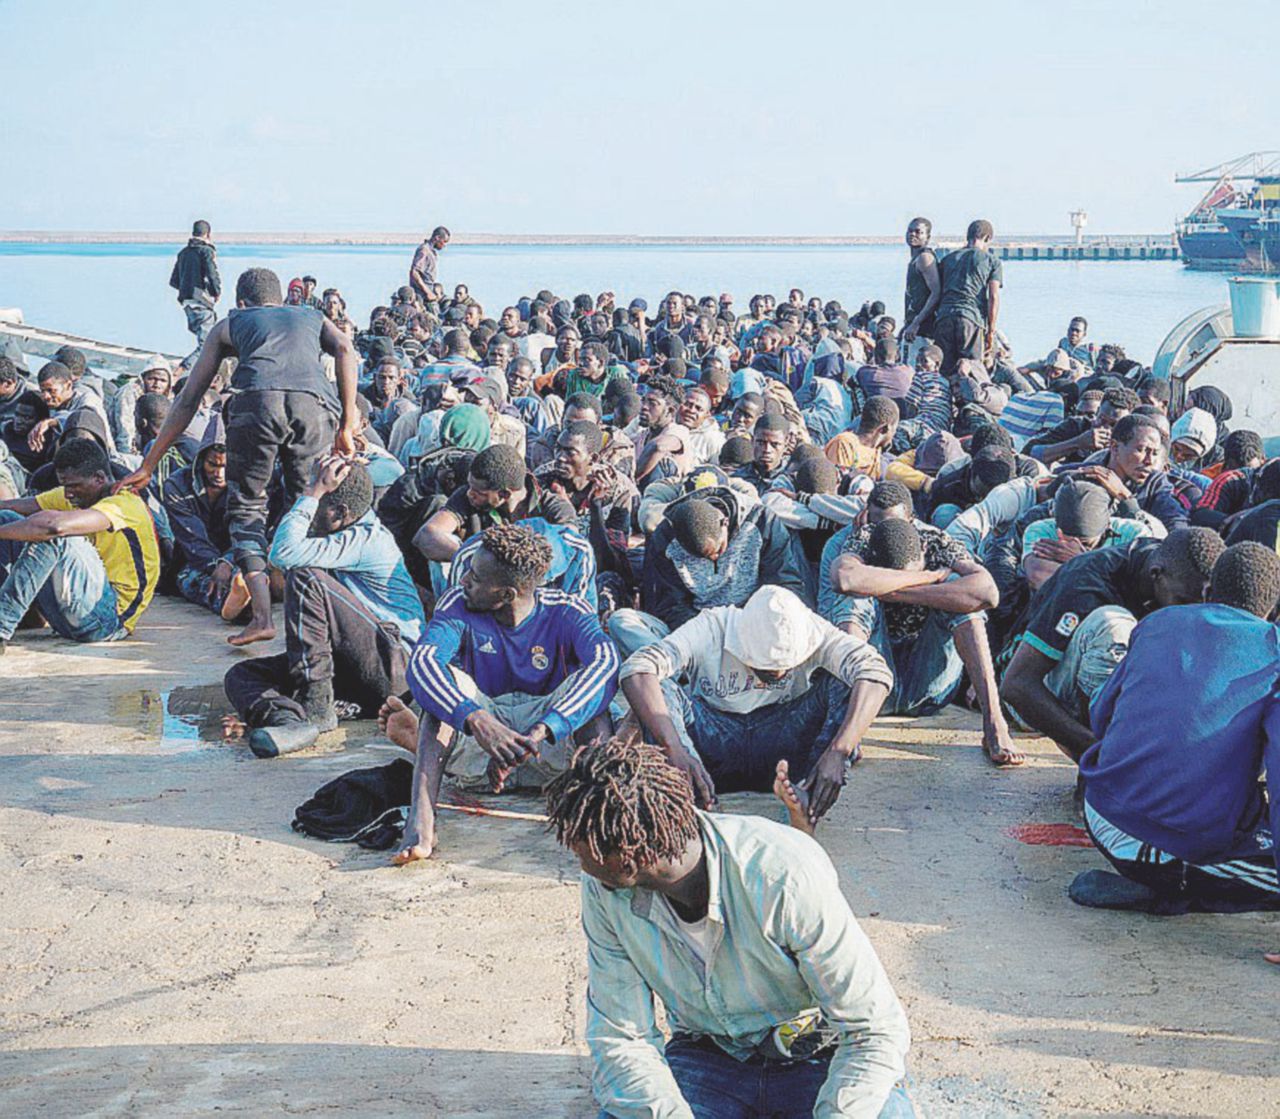 Copertina di Sar libica: le panzane maltesi, la furbizia italiana, l’ipocrisia Ue